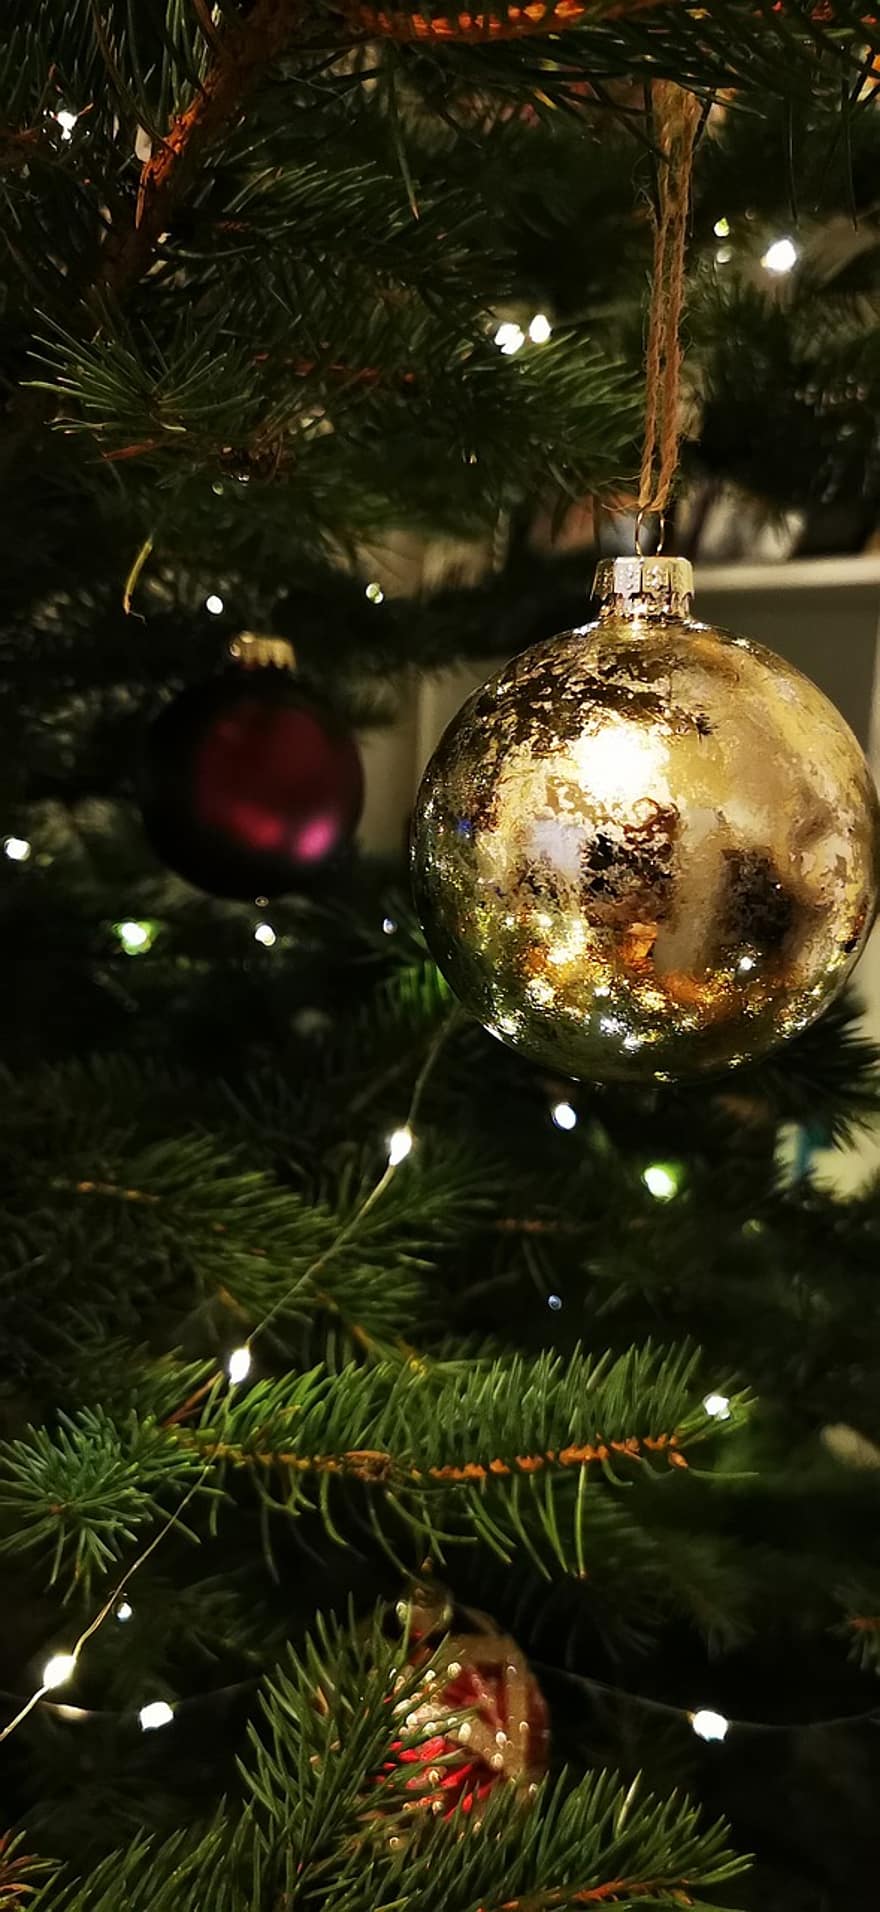 karácsonyi dísz, karácsonyfa, Karácsony, fenyőfa, karácsonyi bál, Karácsonyi fények, tündér fények, karácsonyi csecsebecse, Karácsonyi dekoráció, karácsonyi dekoráció, dísz